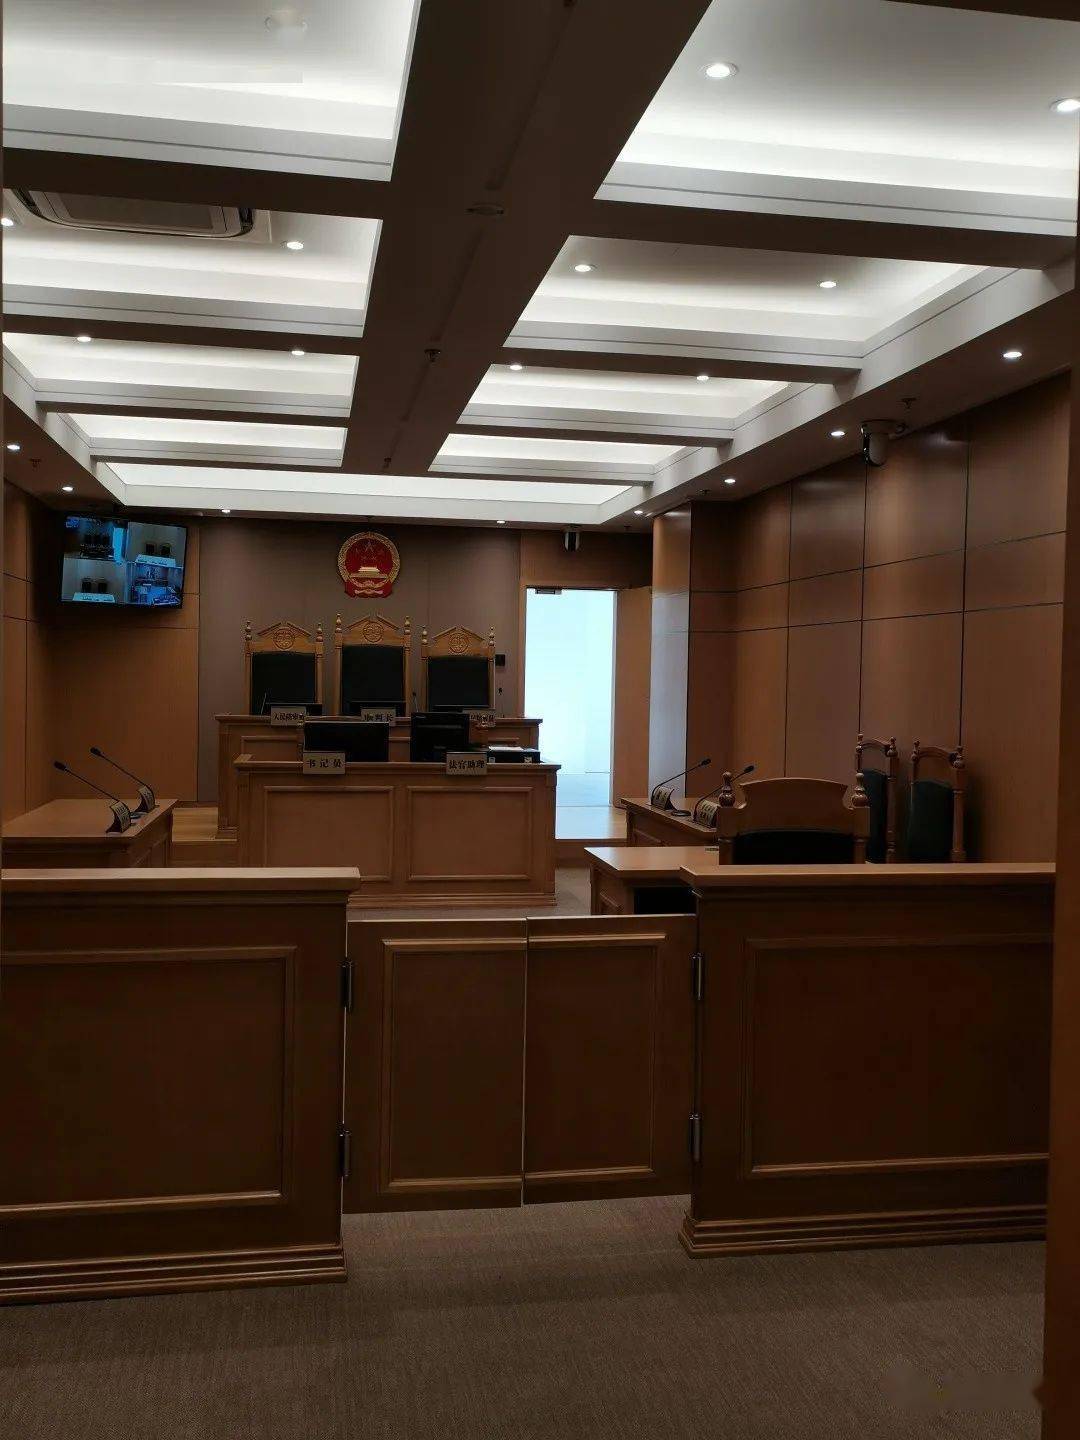 静安法院新立案大厅启用跟镜头看看现场环境吧